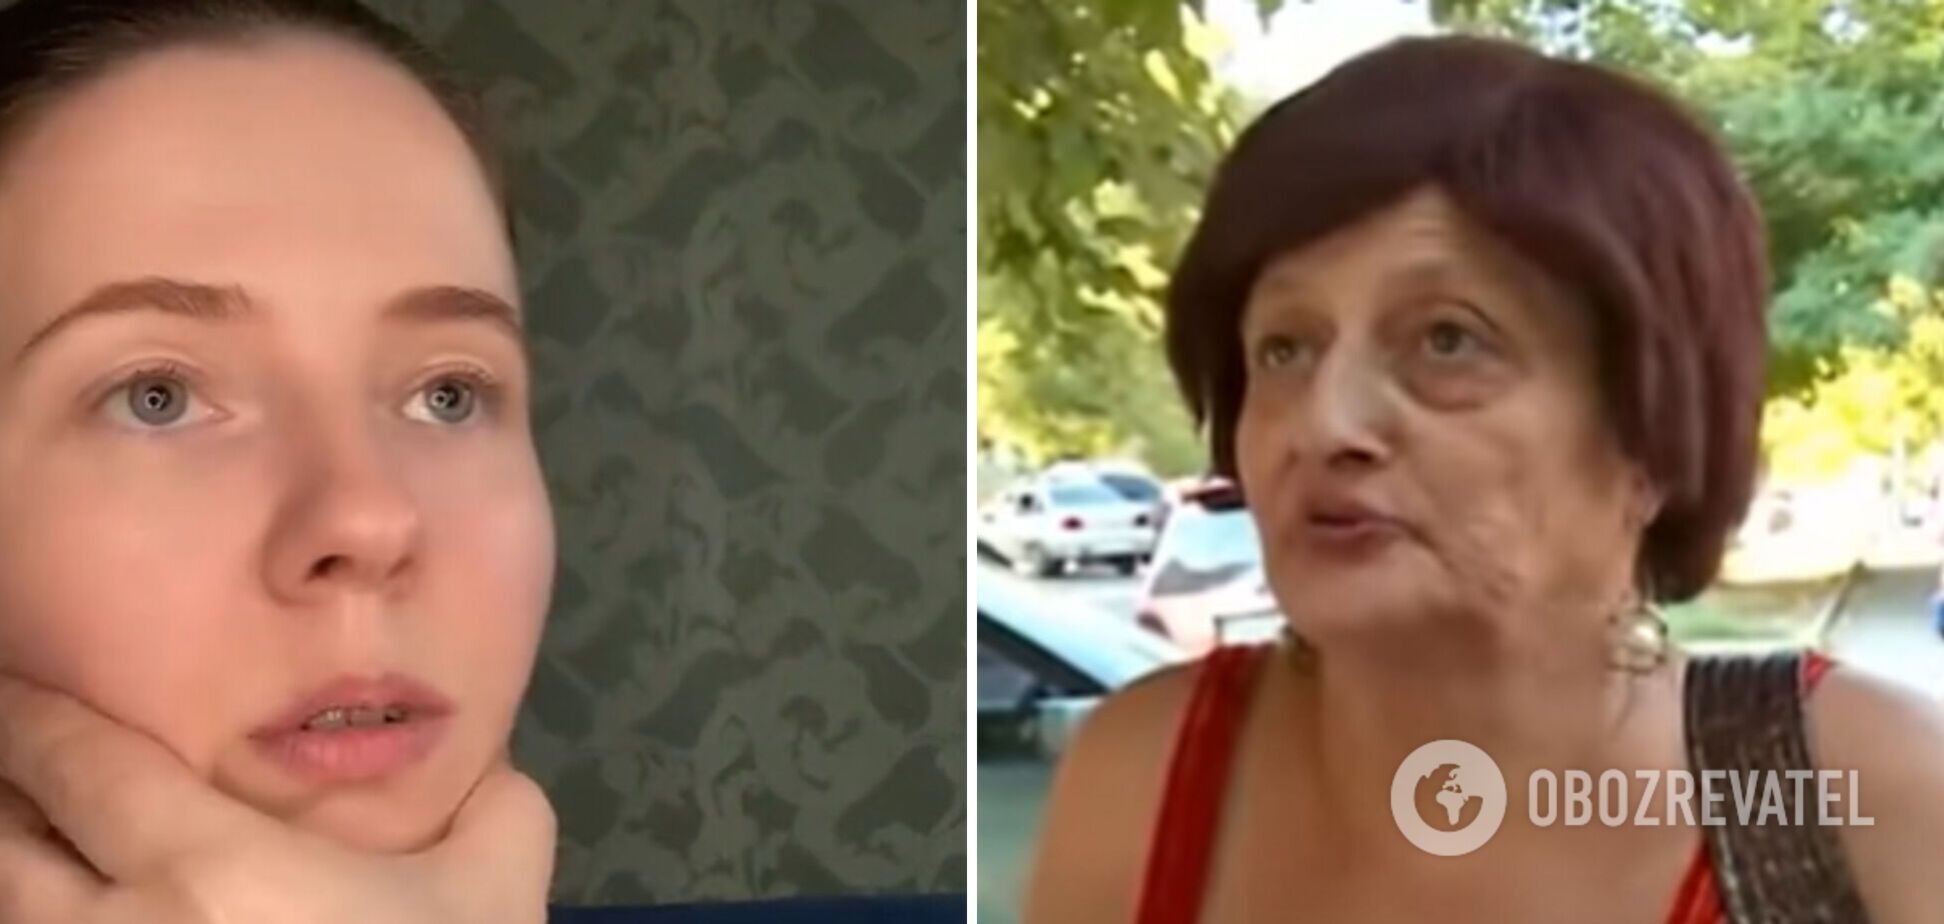 'У меня русскоязычная челюсть': мастер-класс по ласковой украинизации вызвал ажиотаж в сети. Видео